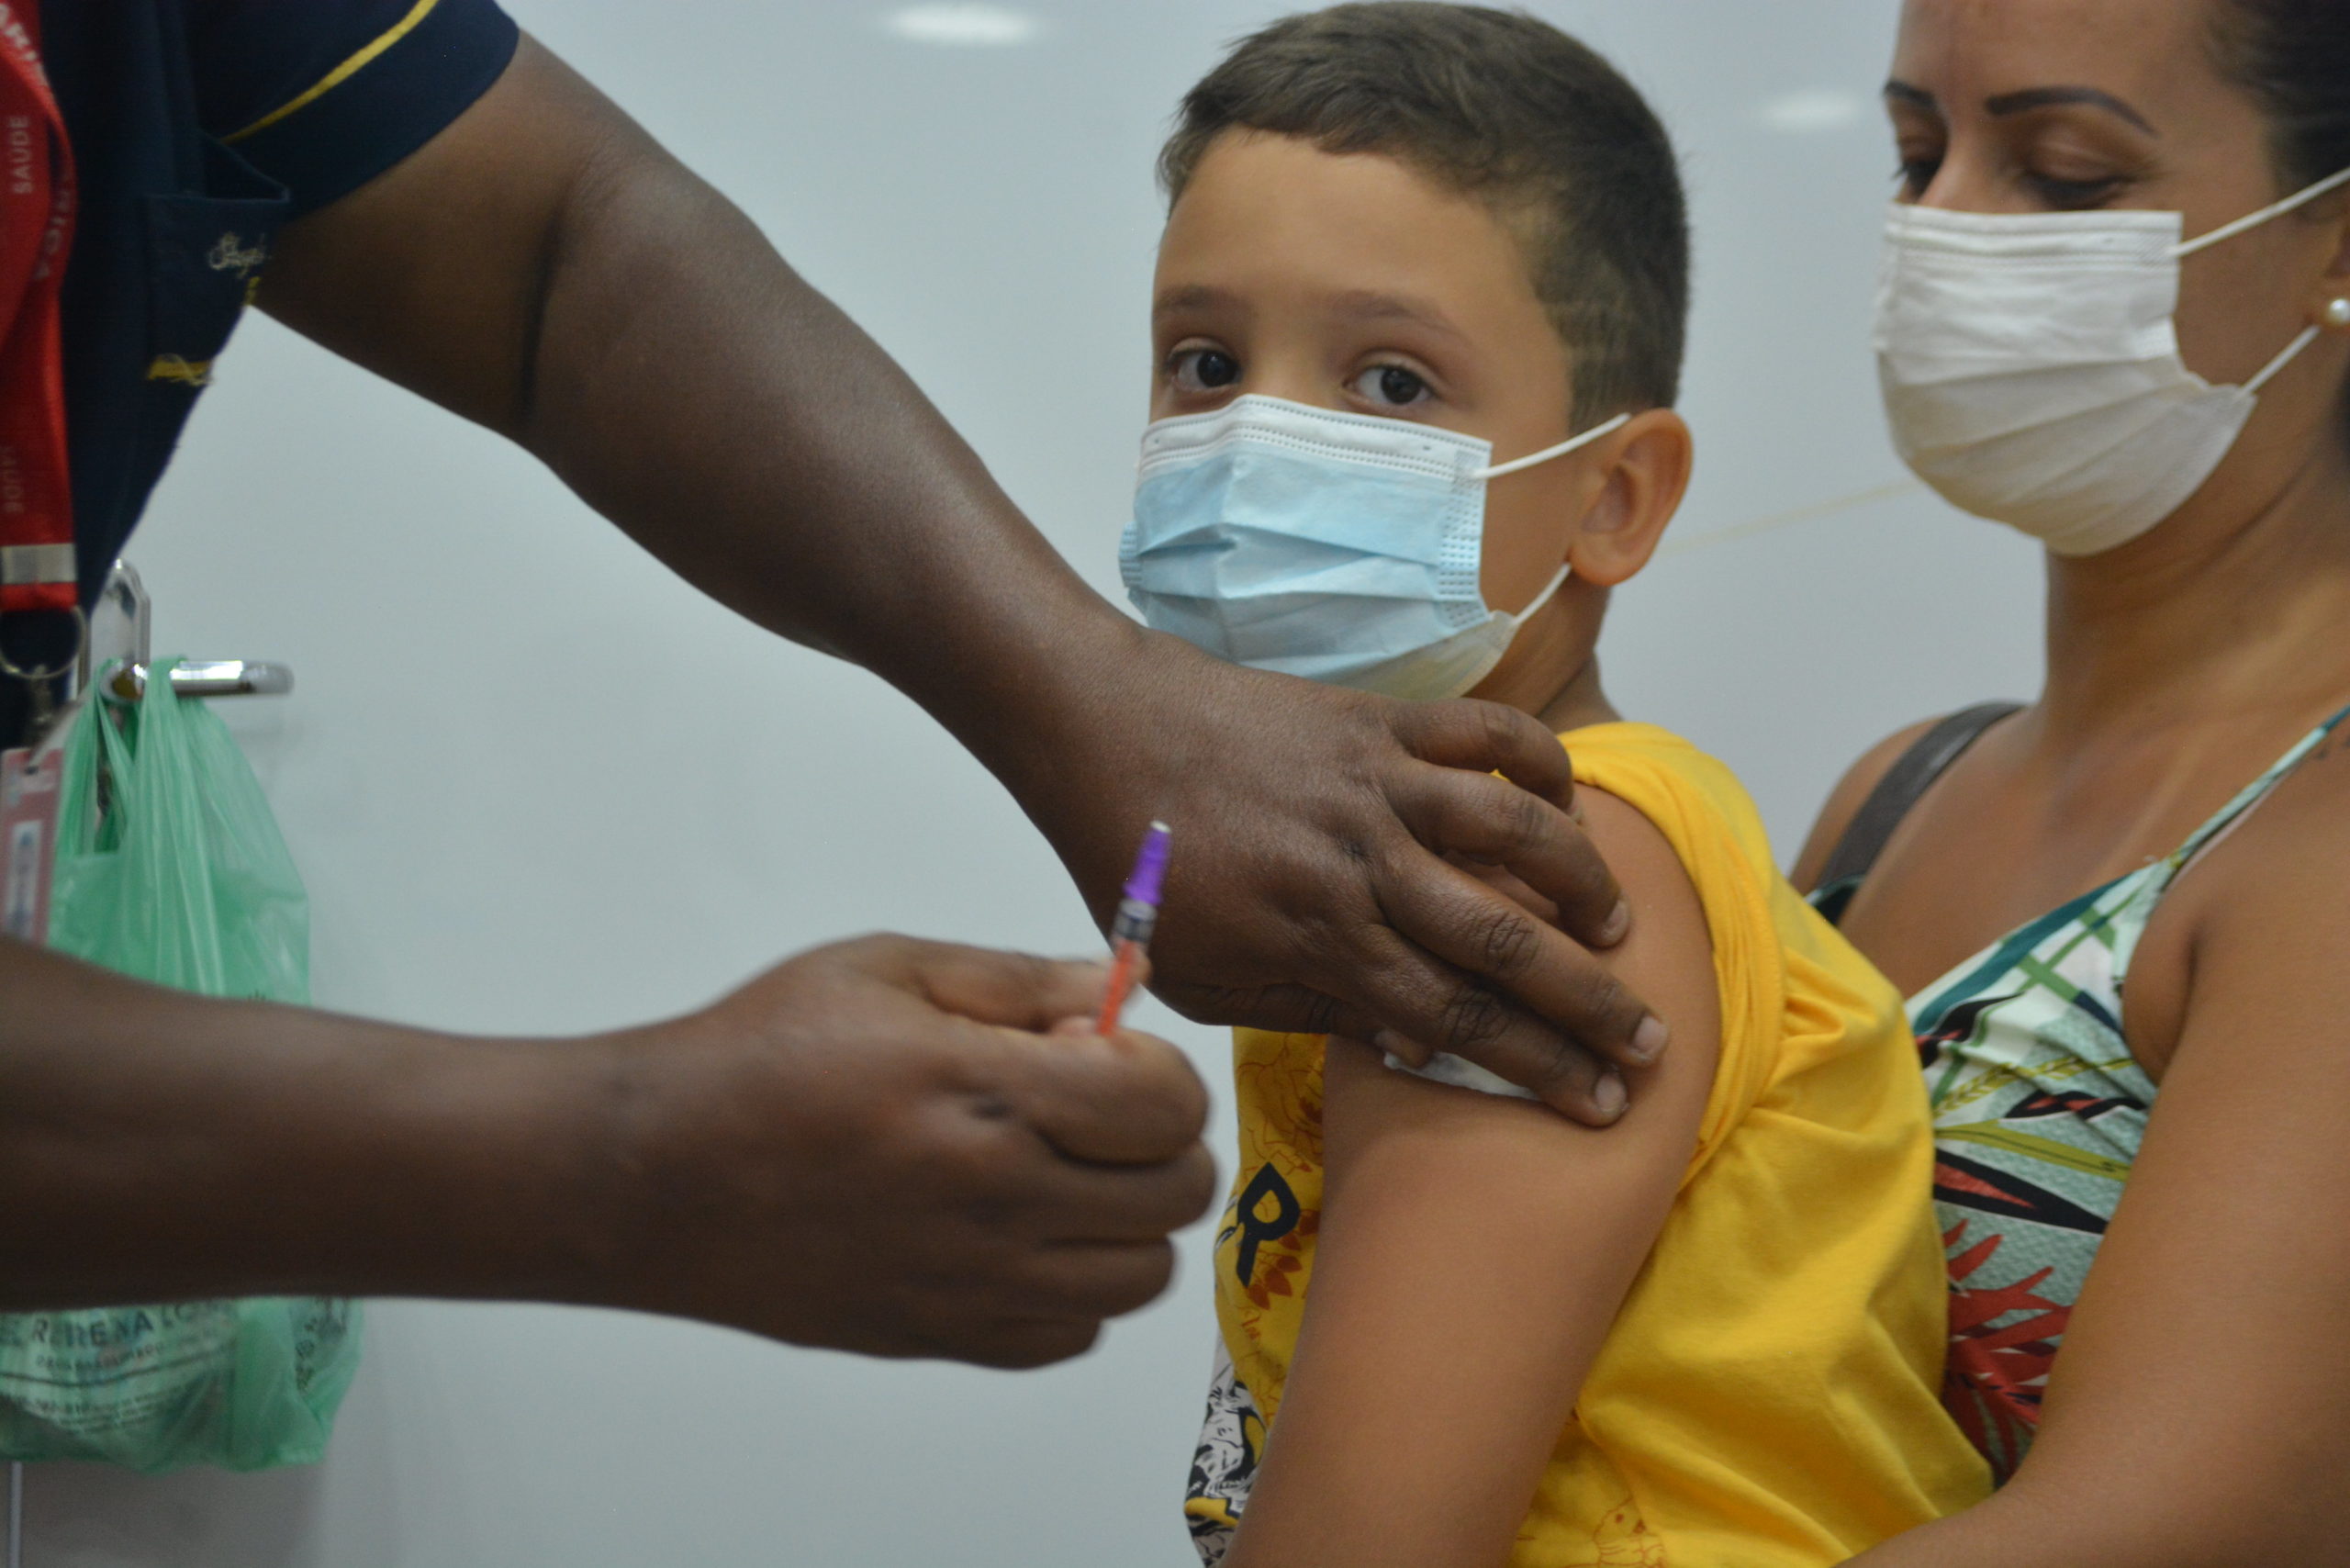 Vacinação infantil contra Covid-19 em Maricá